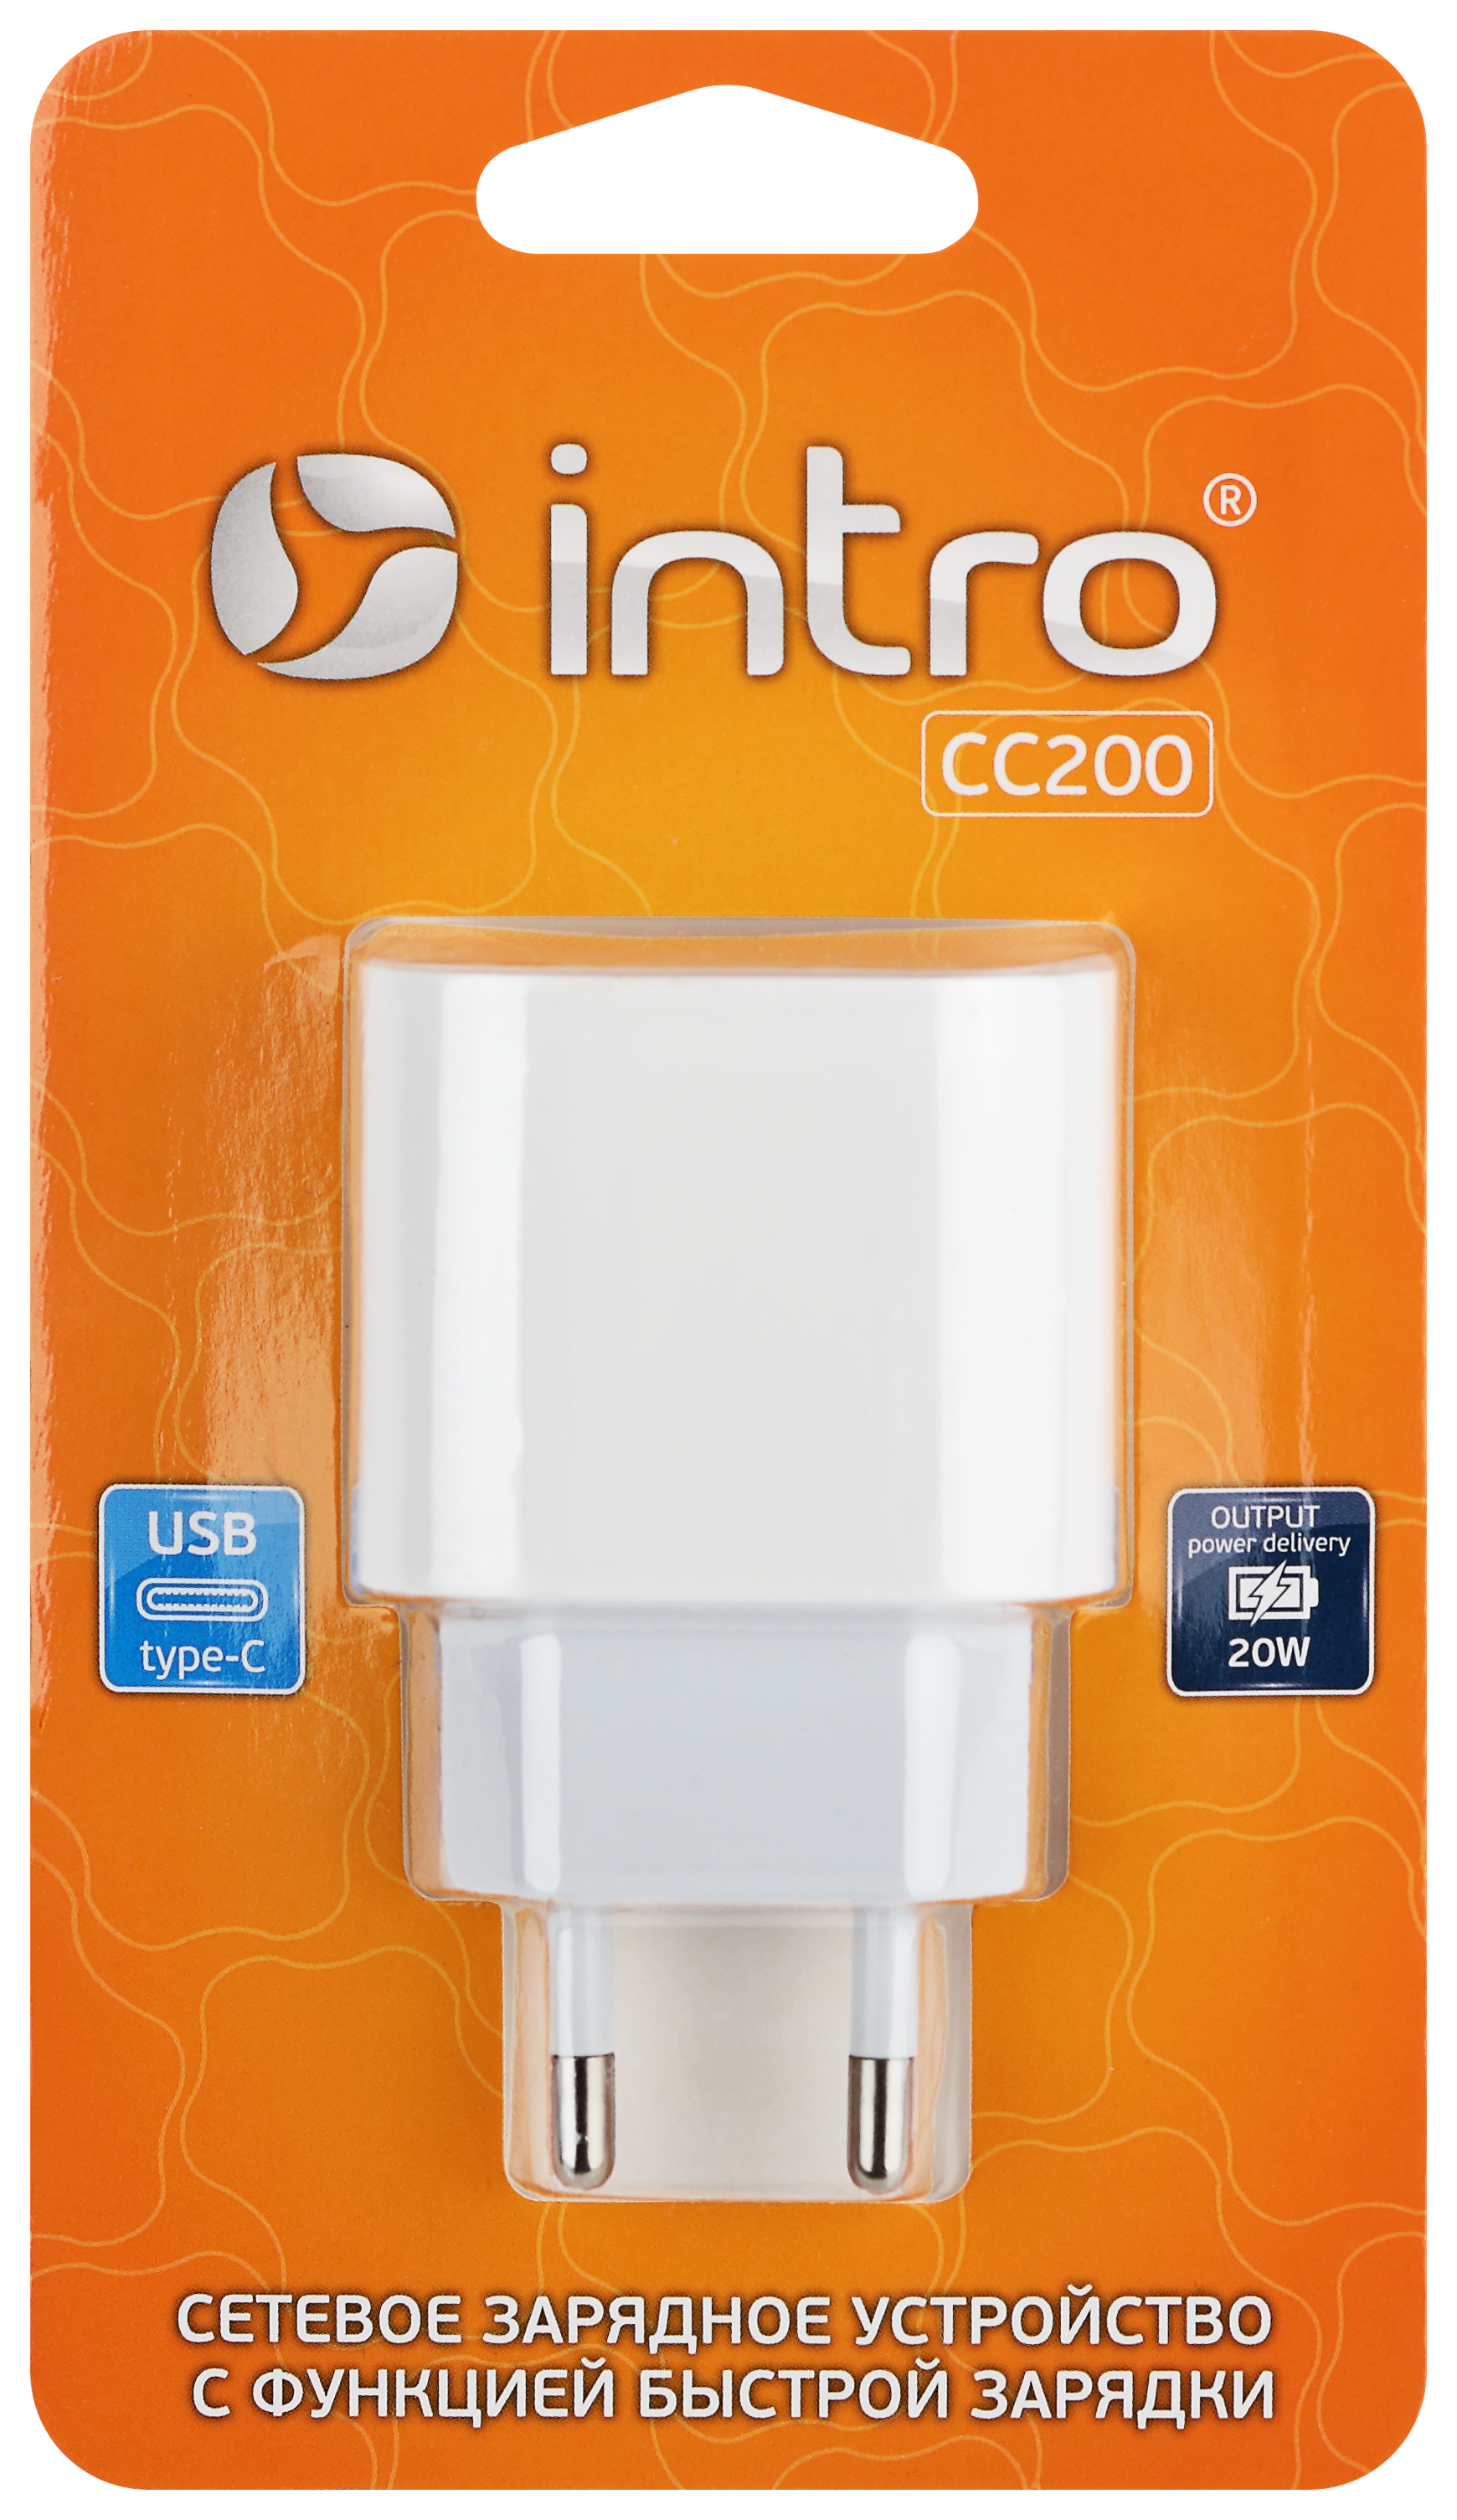 Сетевое зарядное устройство Intro CC200 Type-C быстрая зарядка PD 20W белая